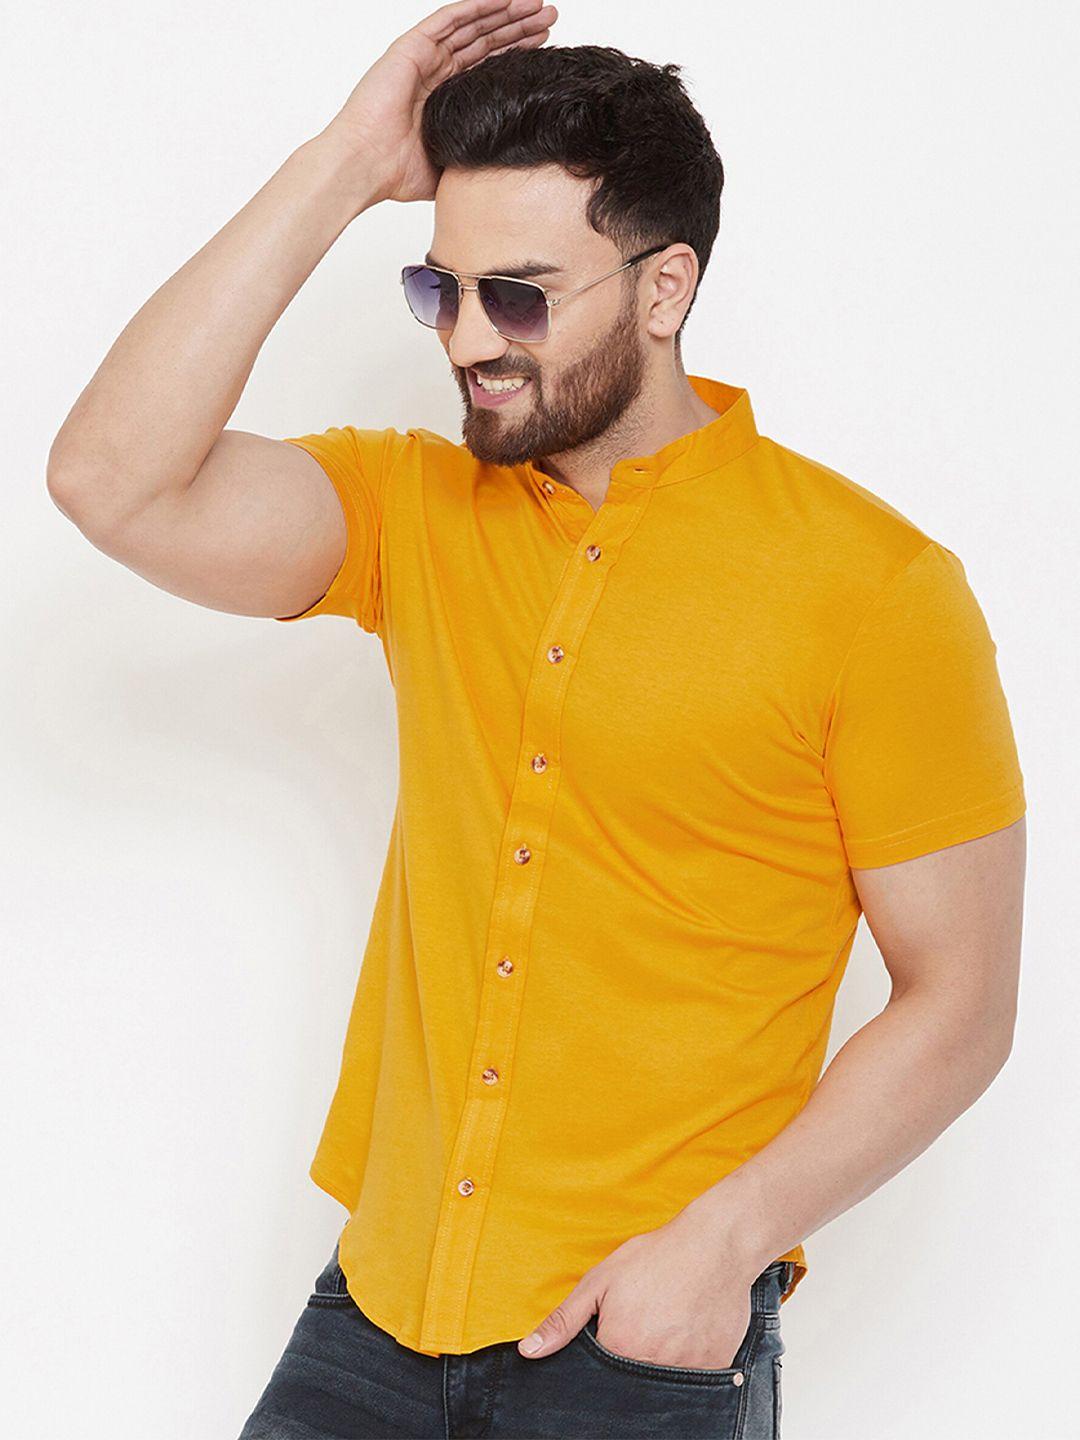 gespo men mustard solid mandarin collar casual shirt